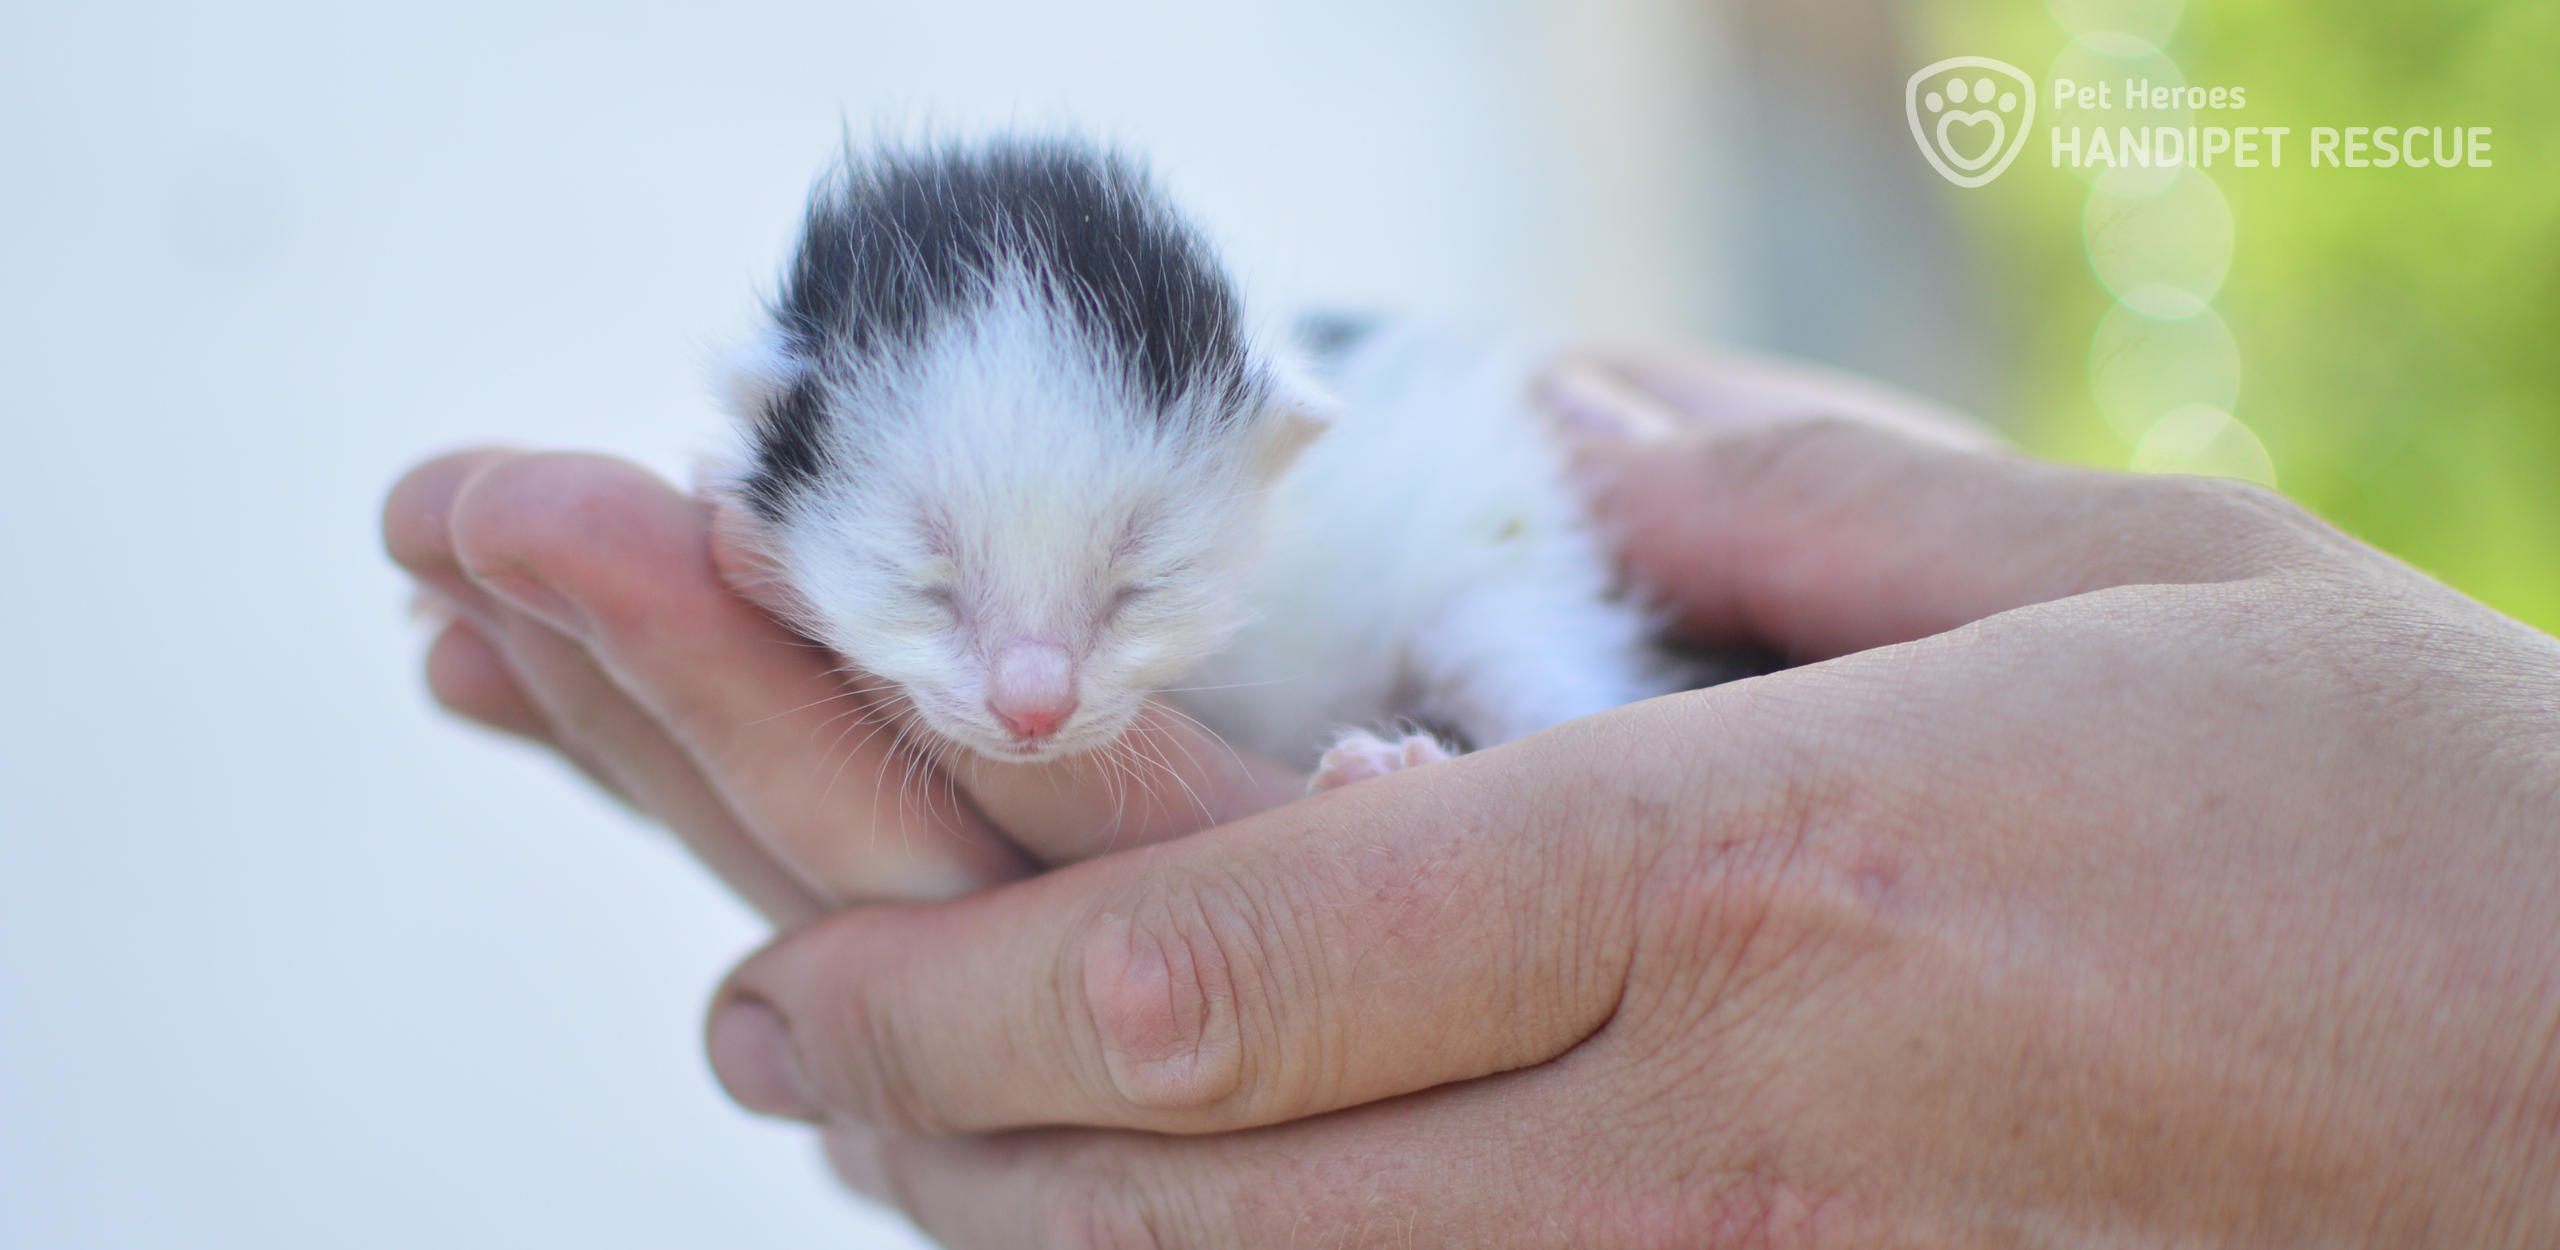 Miniaturní koťátko Peanut, které se vejde do dlaně. Není jí víc než pár dní.